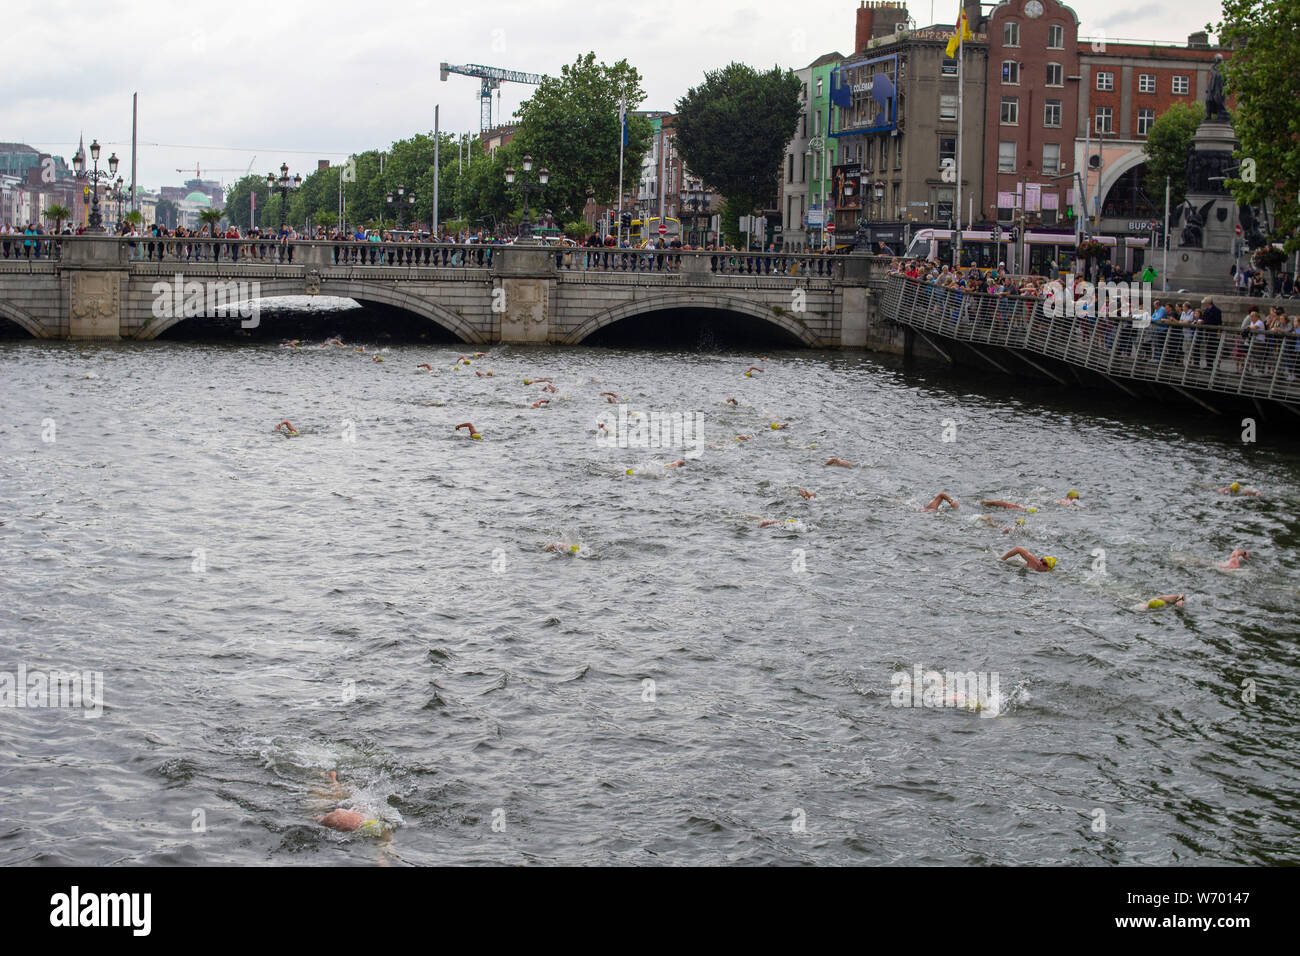 I partecipanti al Centesimo Liifey annuale nuotare passare sotto il ponte O'Connell, Dublino Irlanda. . Questo anno la gara ha attirato 600 partecipanti. Foto Stock